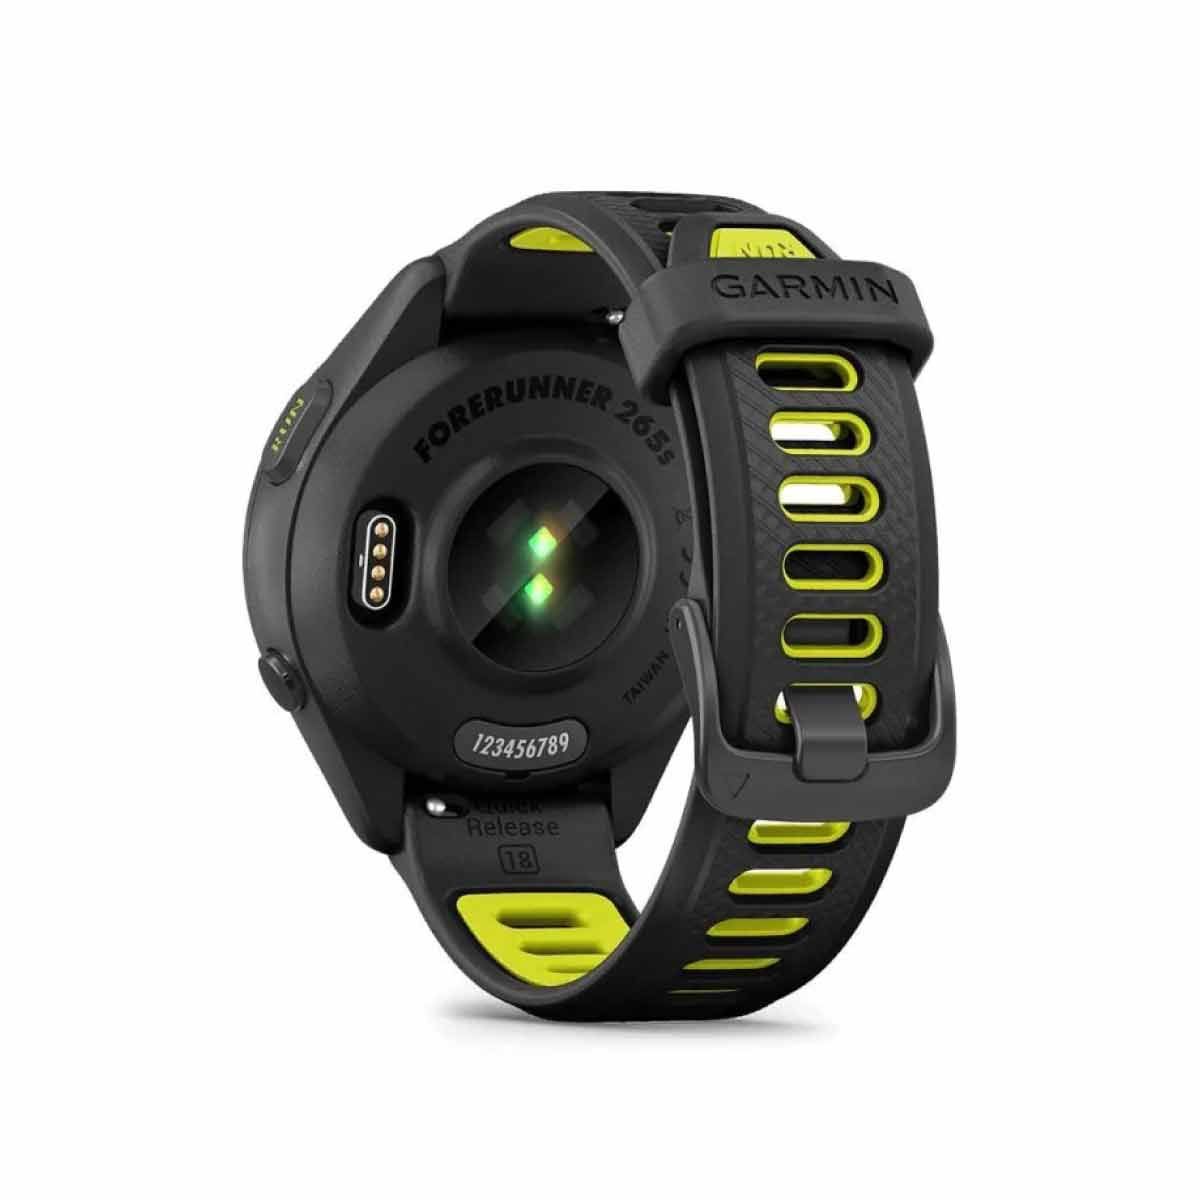 GARMIN Smart Watch  รุ่น Forerunner 265S 42 มม.